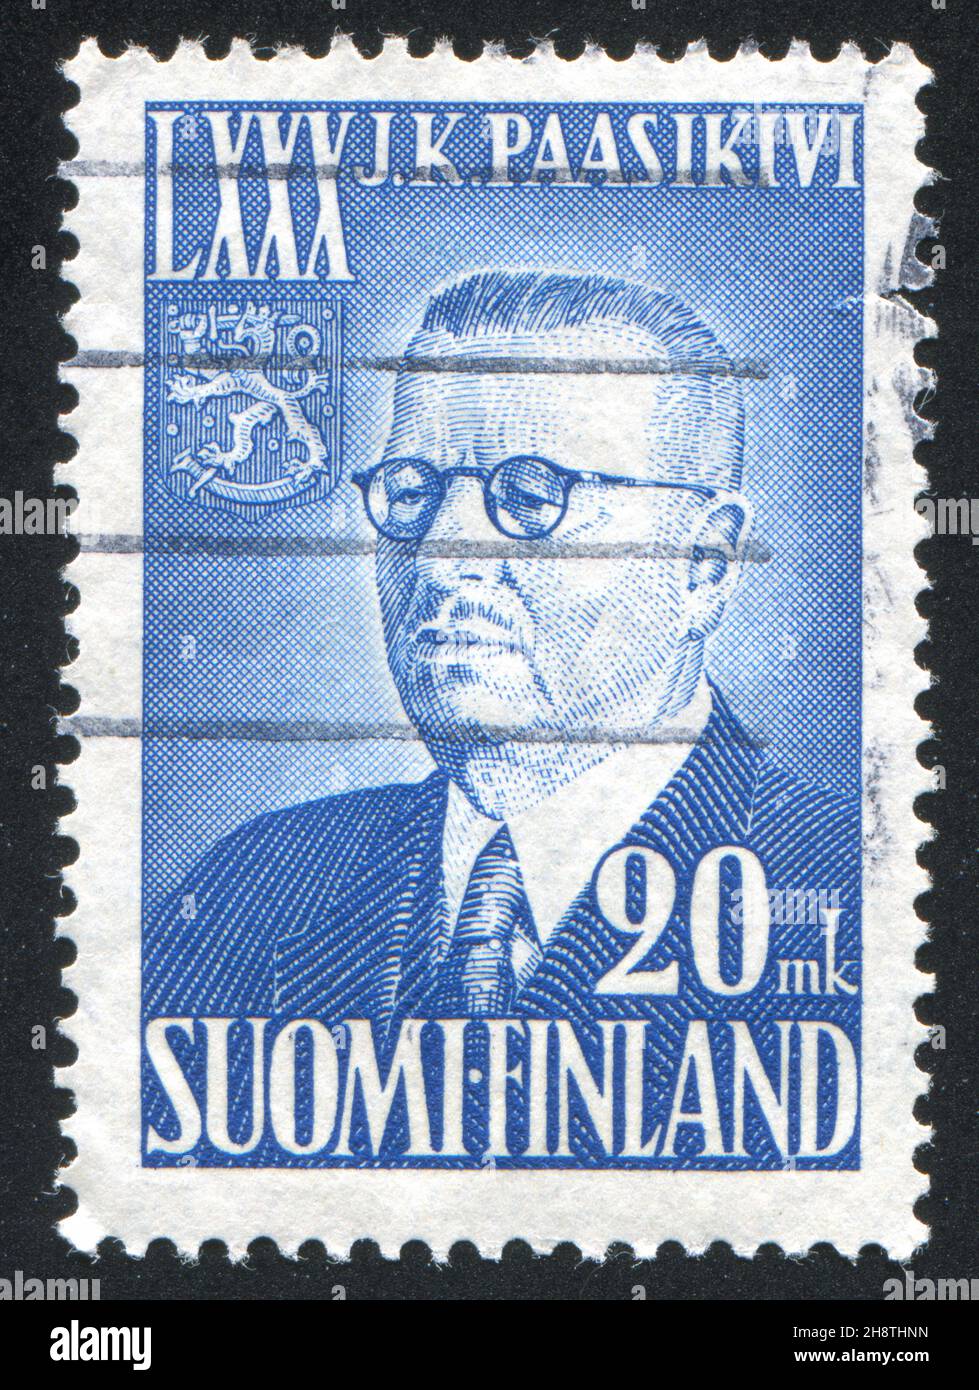 FINNLAND - UM 1950: Briefmarke gedruckt von Finnland, zeigt Porträt von Präsident Juho Paasikivi, um 1950 Stockfoto